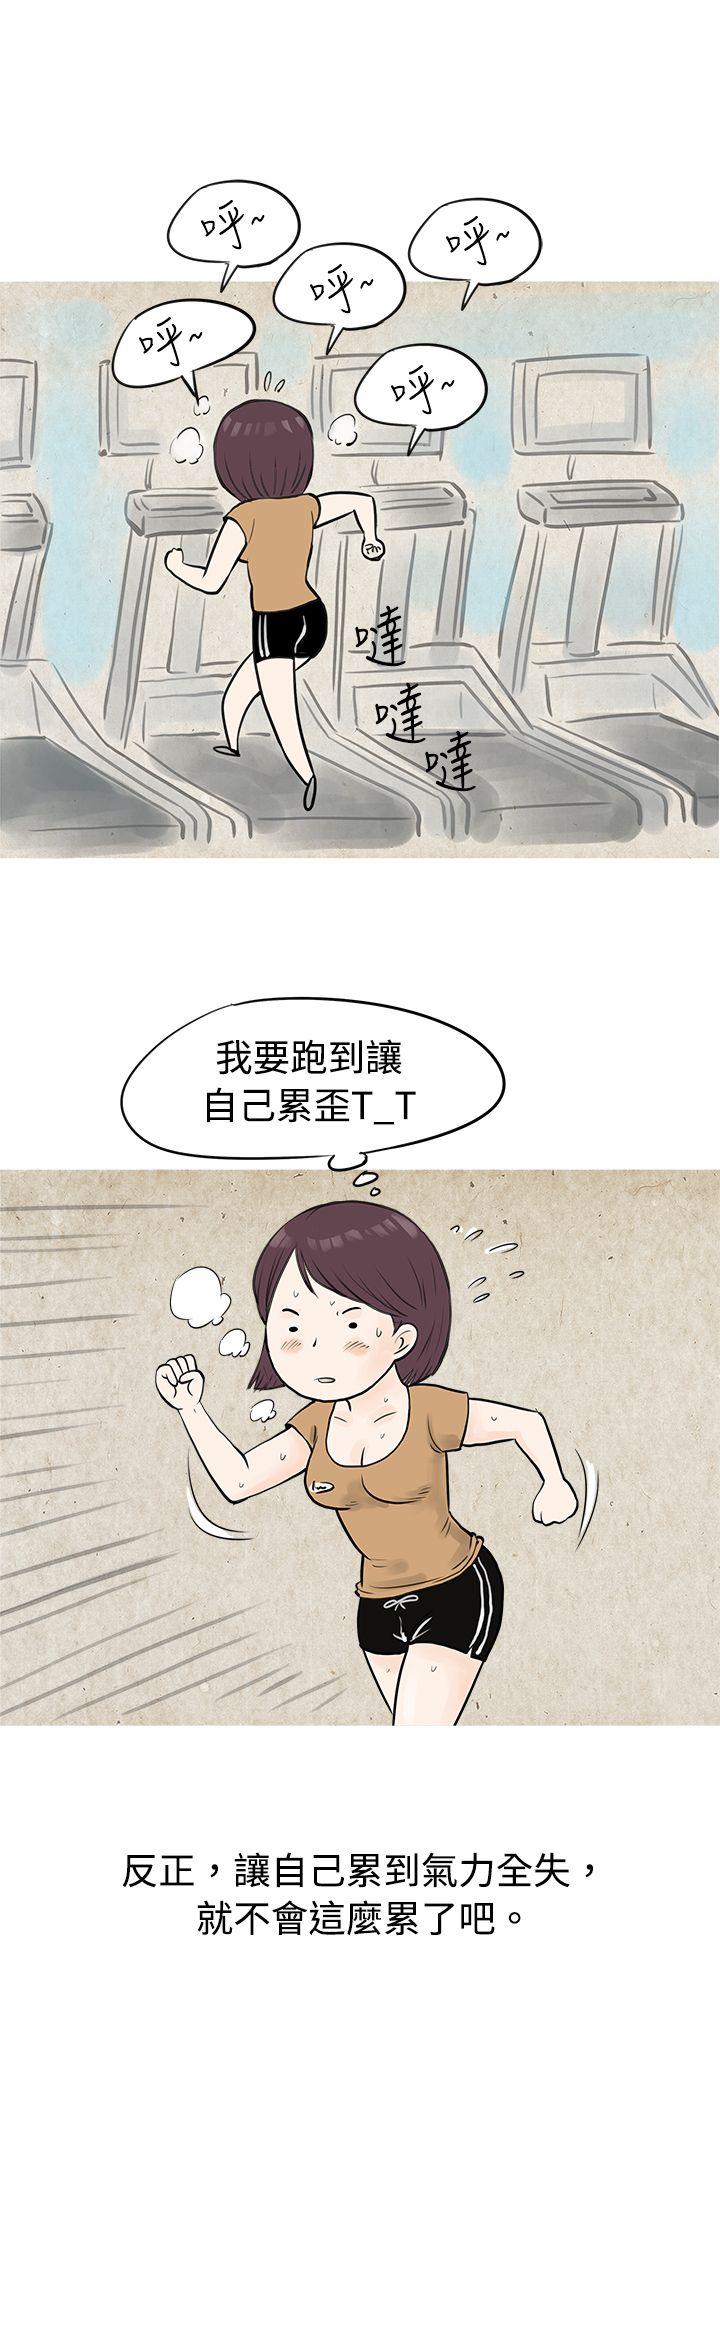 秘密Story  到健身房解决需求(上) 漫画图片12.jpg